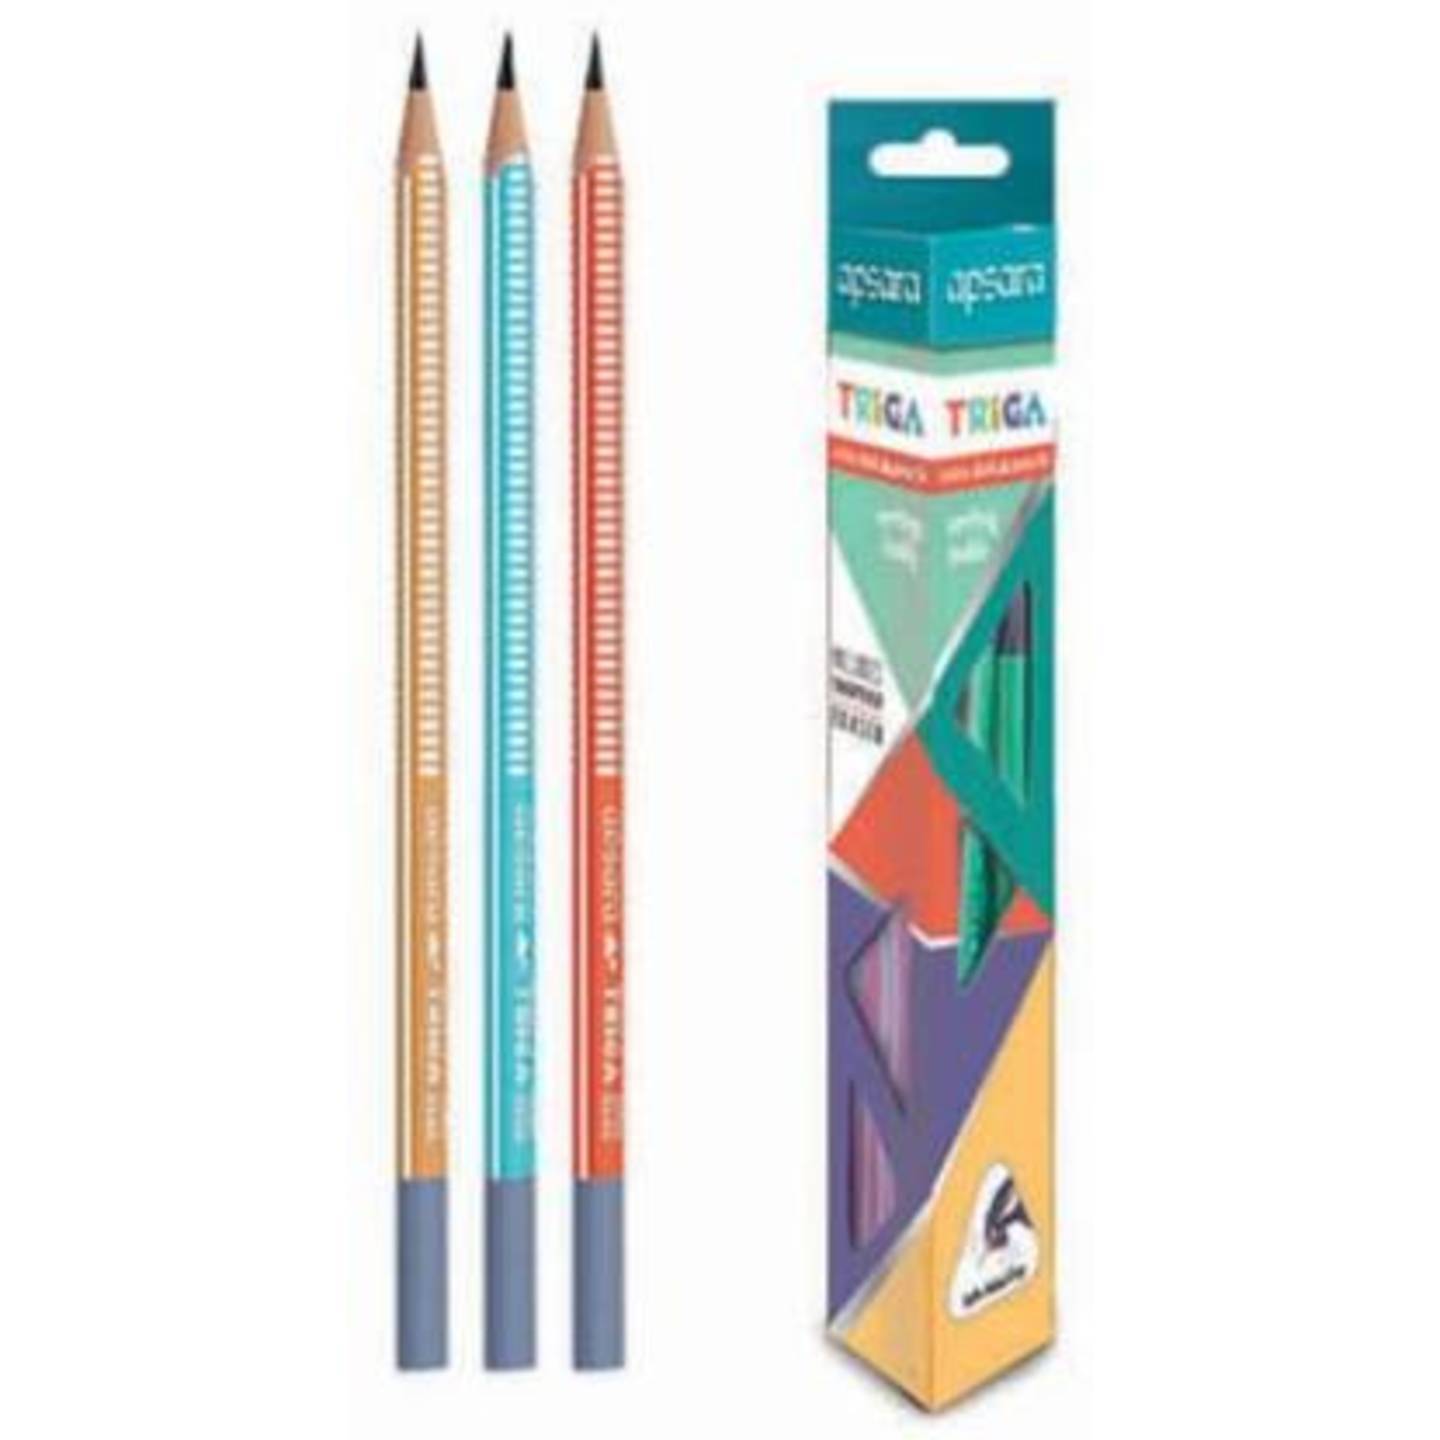 Apsara Triga Extra Dark Pencils pack of 10